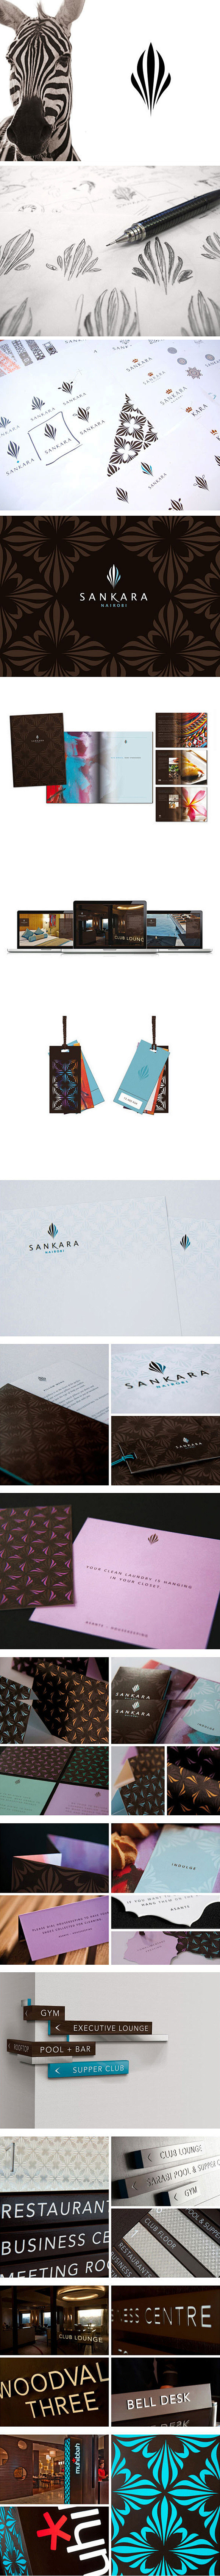 Sankara 酒店形象设计@whisp...